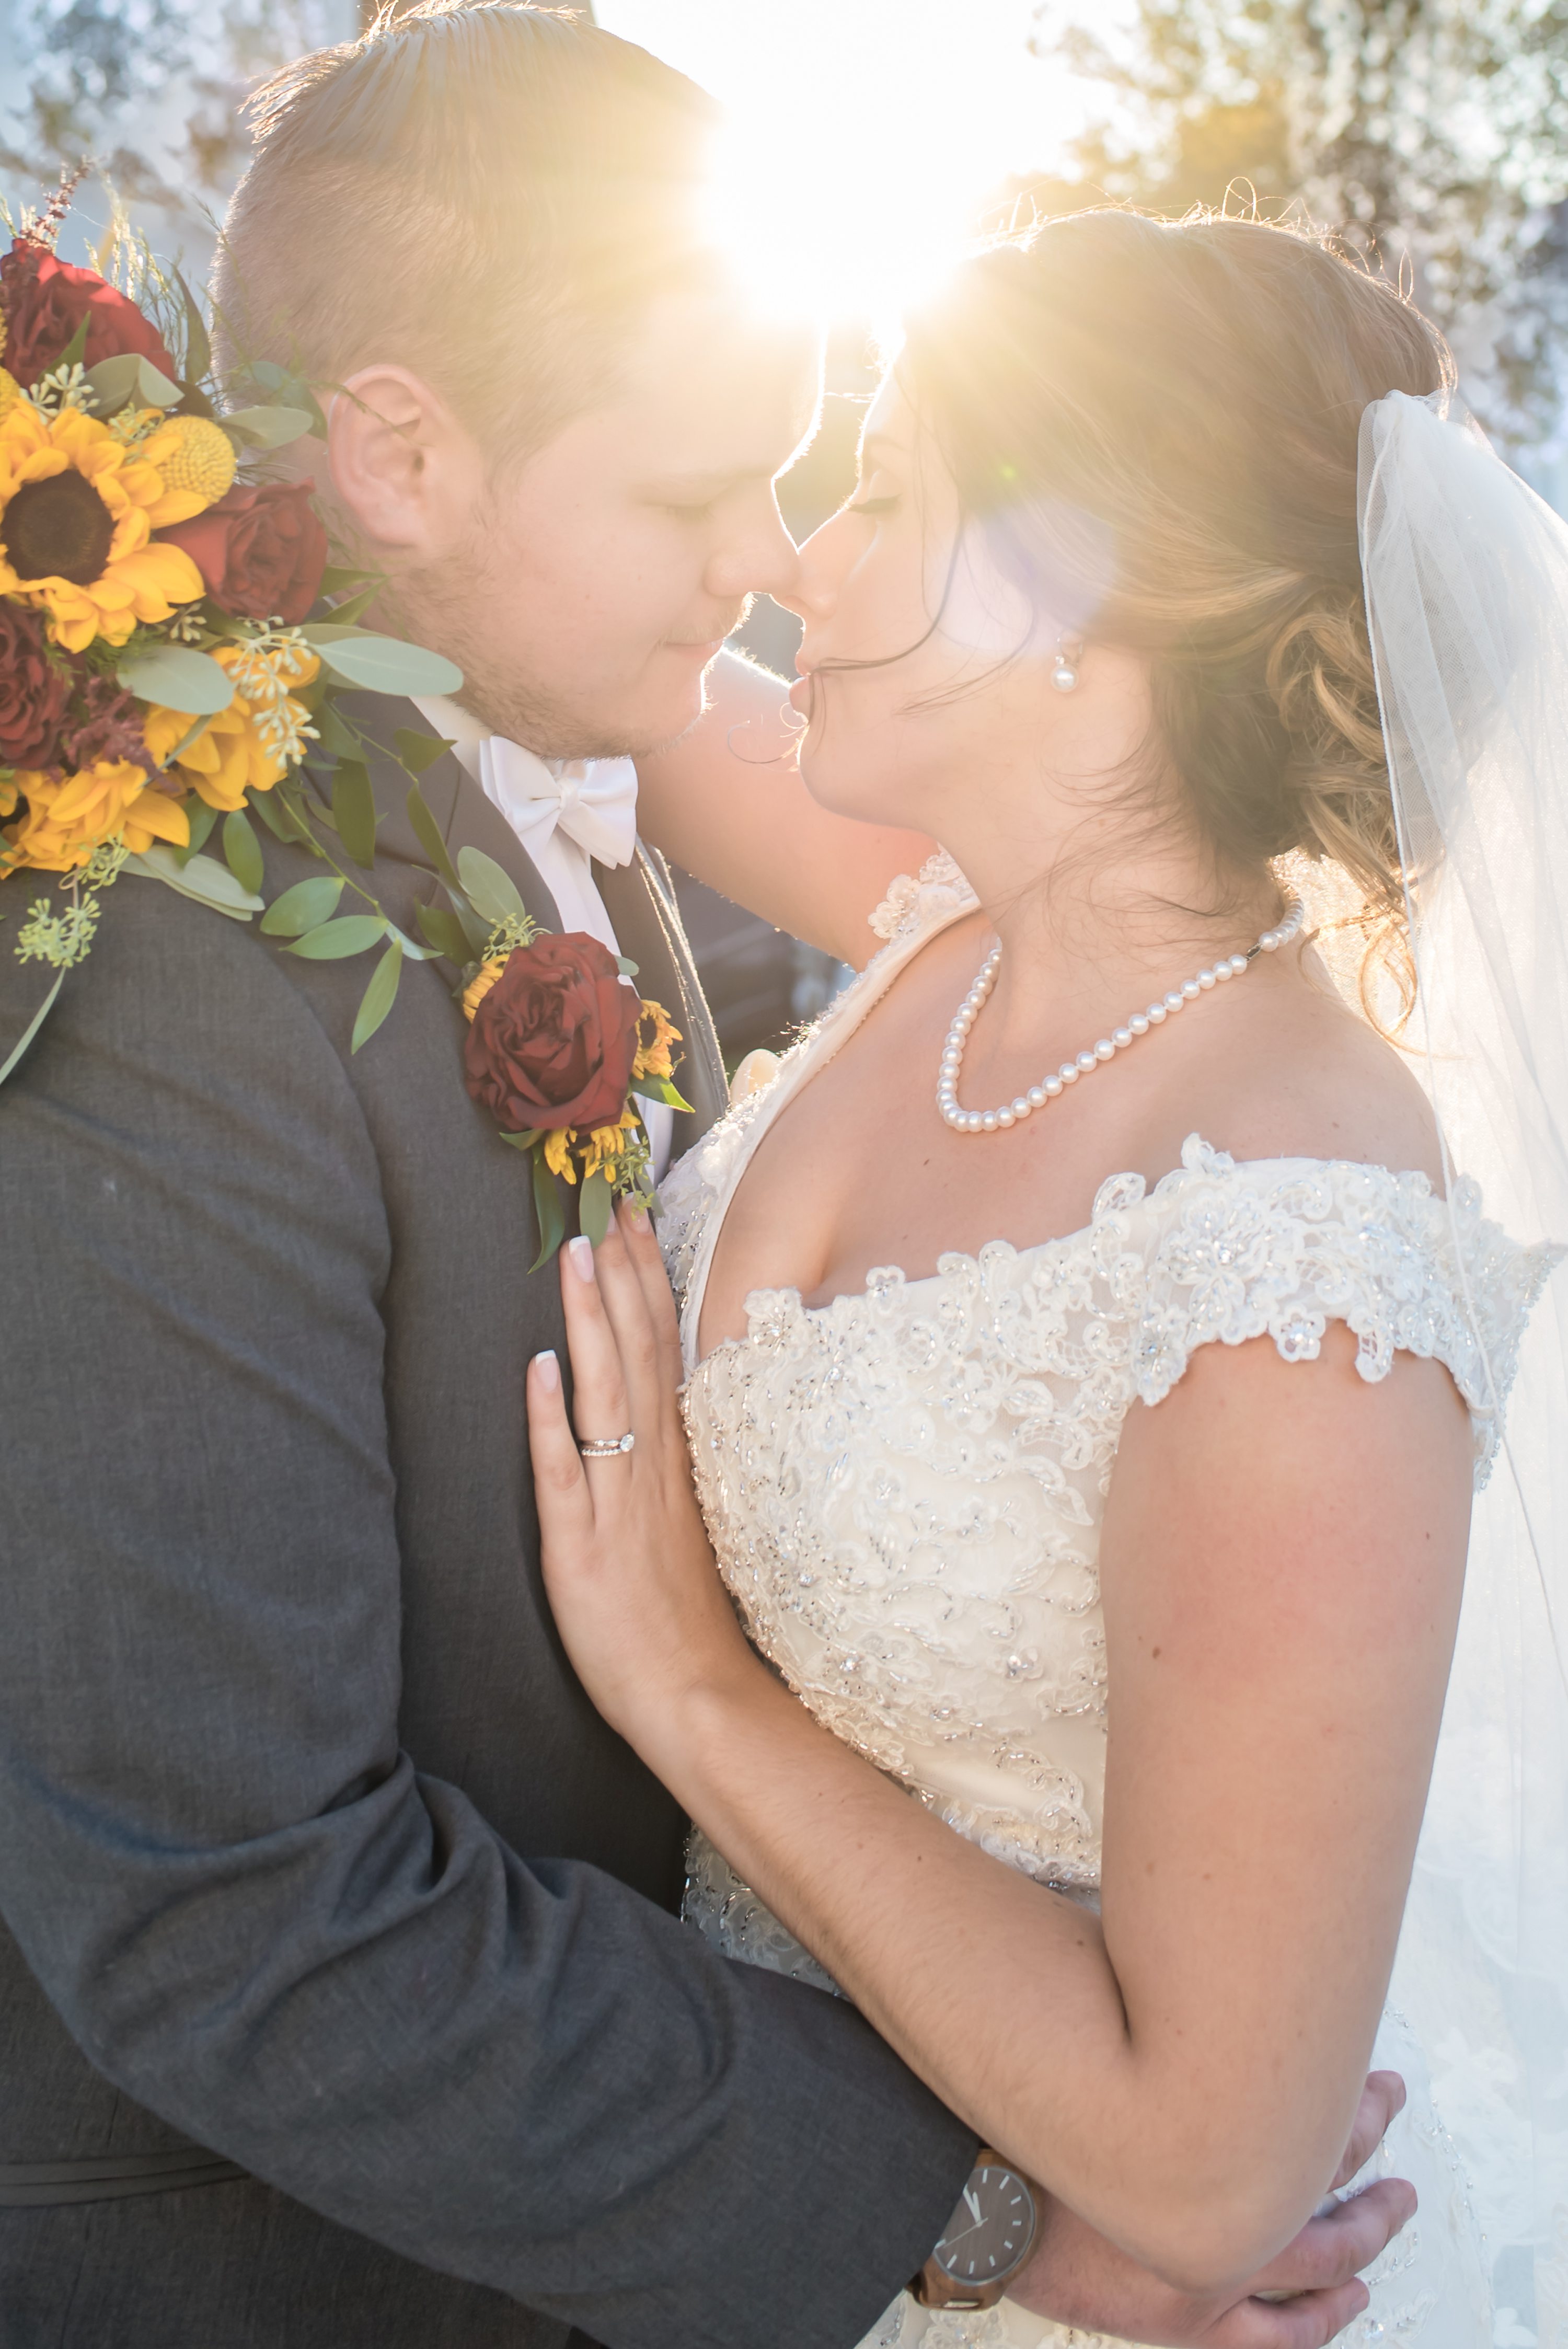 Rhode Island Wedding Photographer,Warwick Rhode Island Wedding,Demetrios Bride,Fall wedding in New England